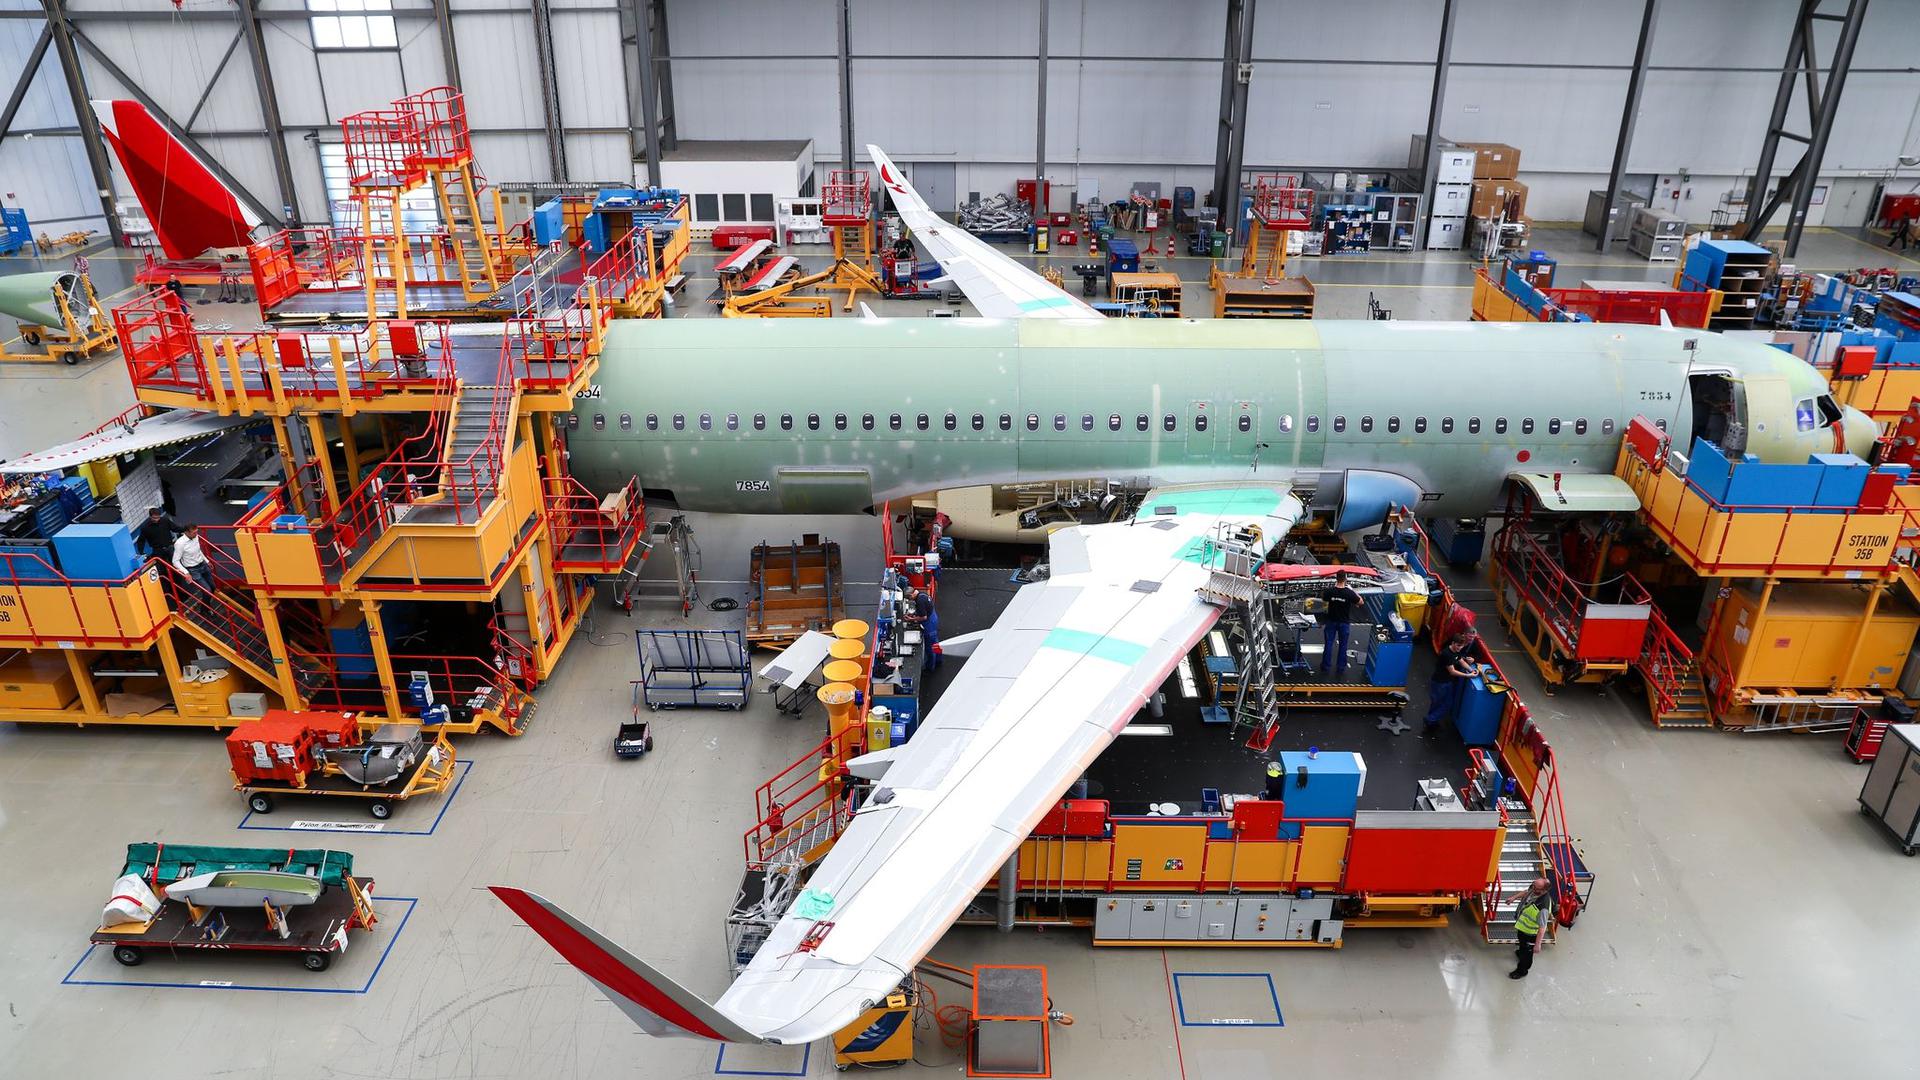 Wegen der Corona-Krise hat Airbus seine Flugzeugproduktion um rund 40 Prozent heruntergefahren und will bis kommenden Sommer rund 15.000 Arbeitsplätze abbauen.